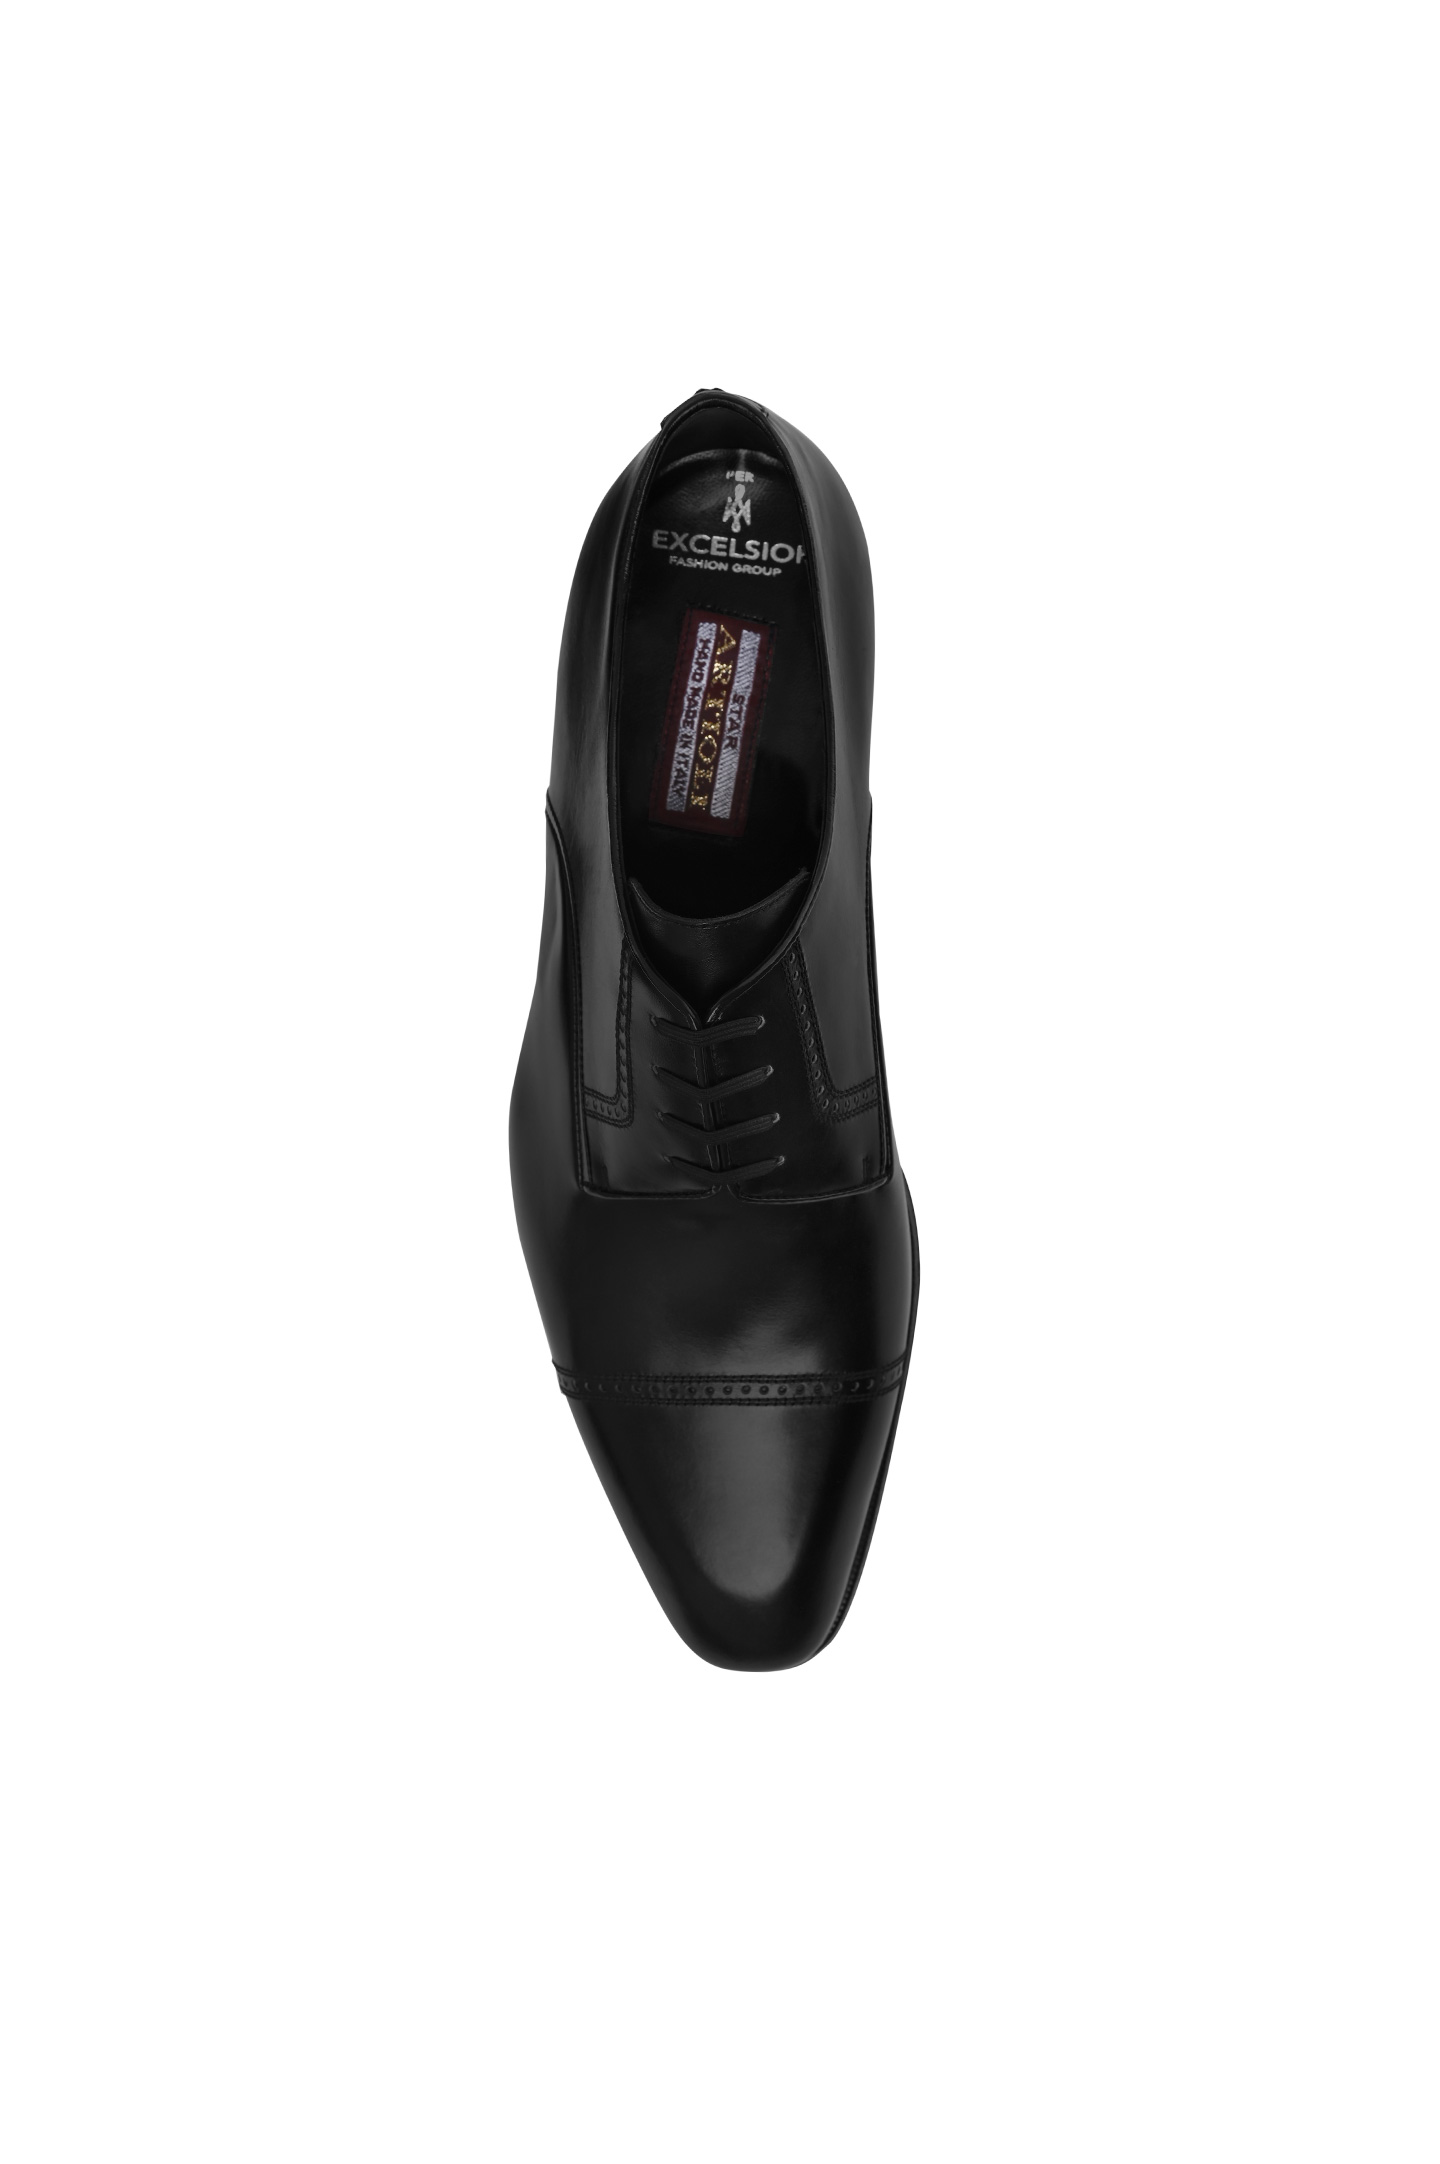 Туфли ARTIOLI 0G6S386/BIS, цвет: Черный, Мужской